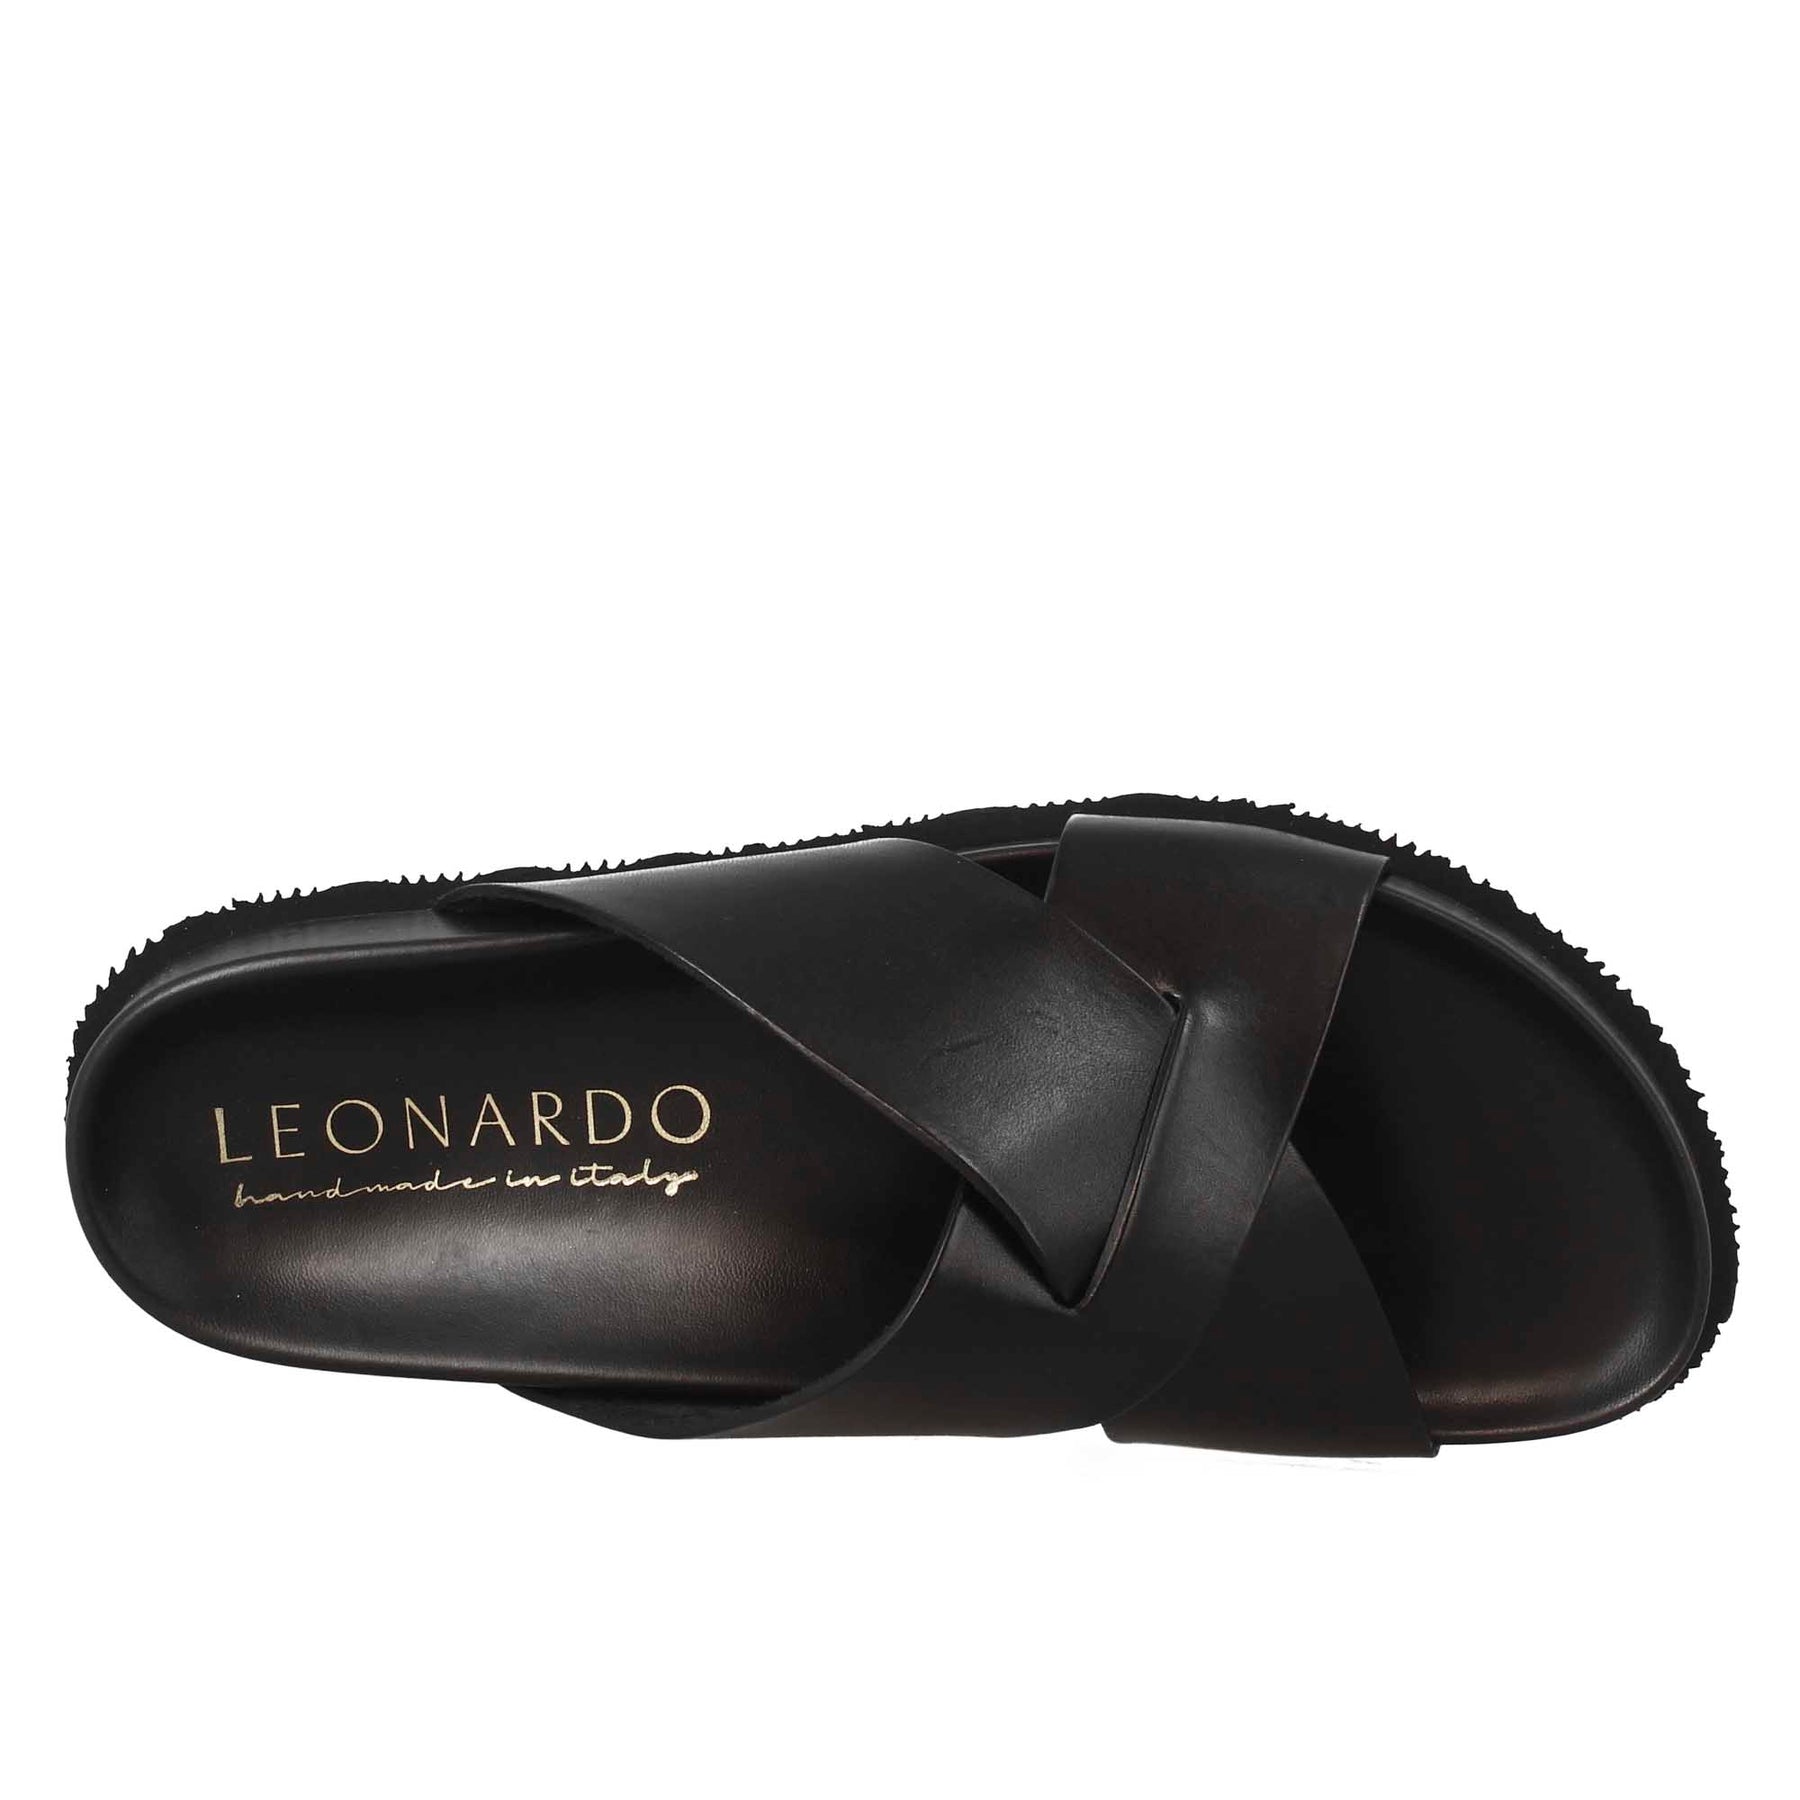 Black open back leather sandals for men